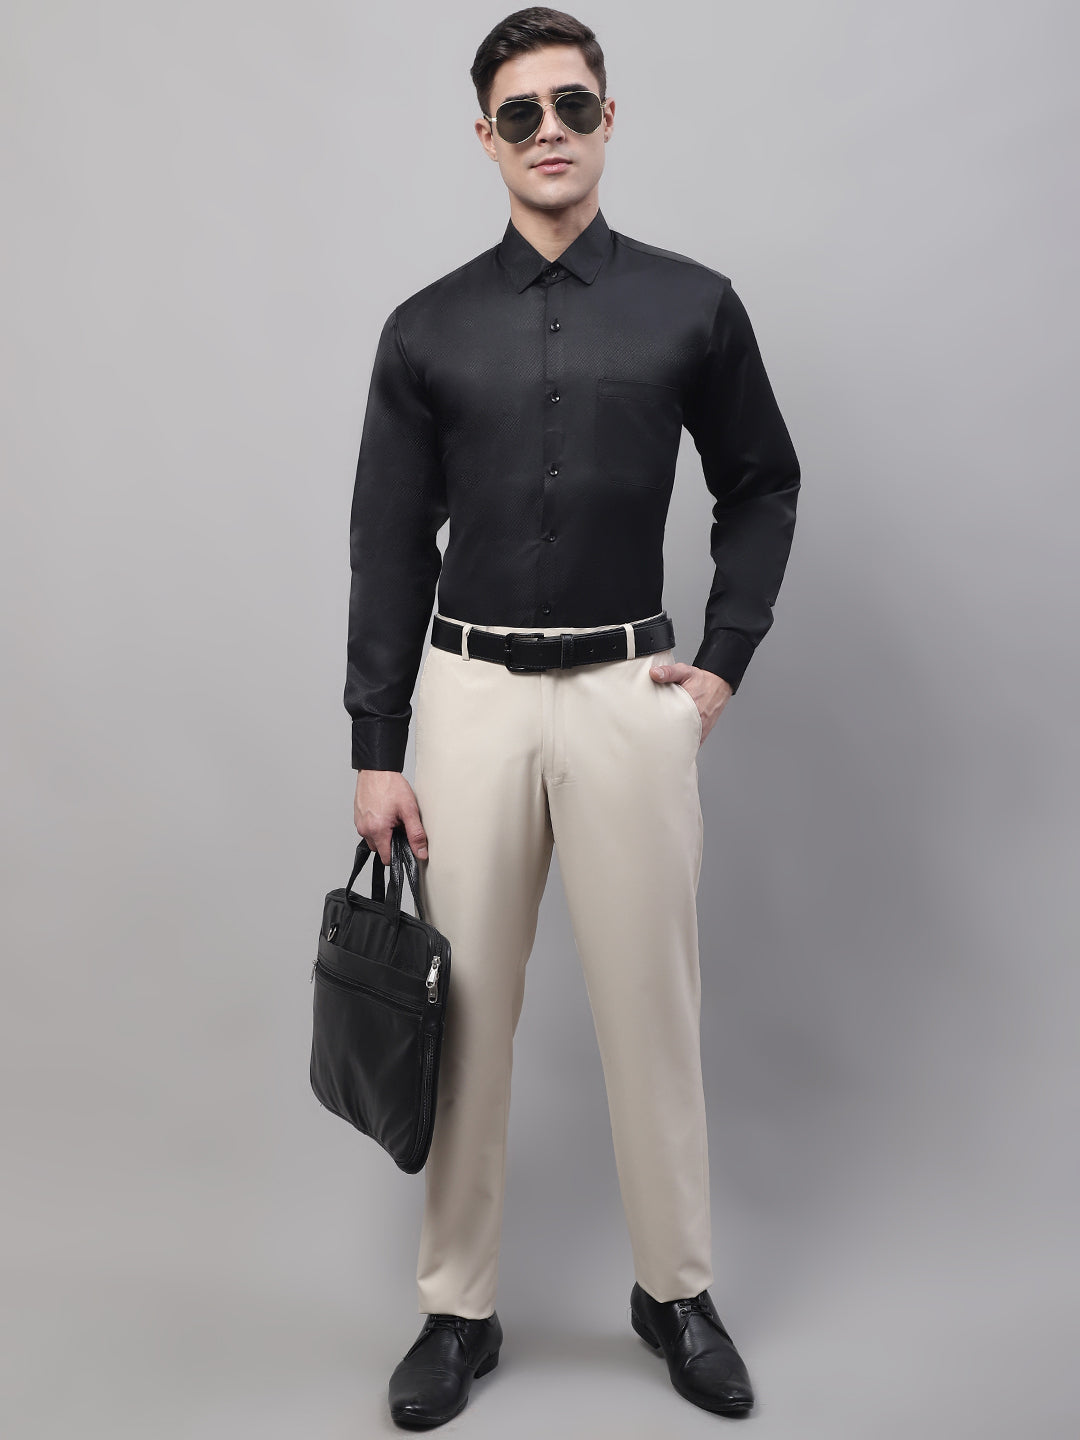 Men's Black Dobby Textured Formal Shirt